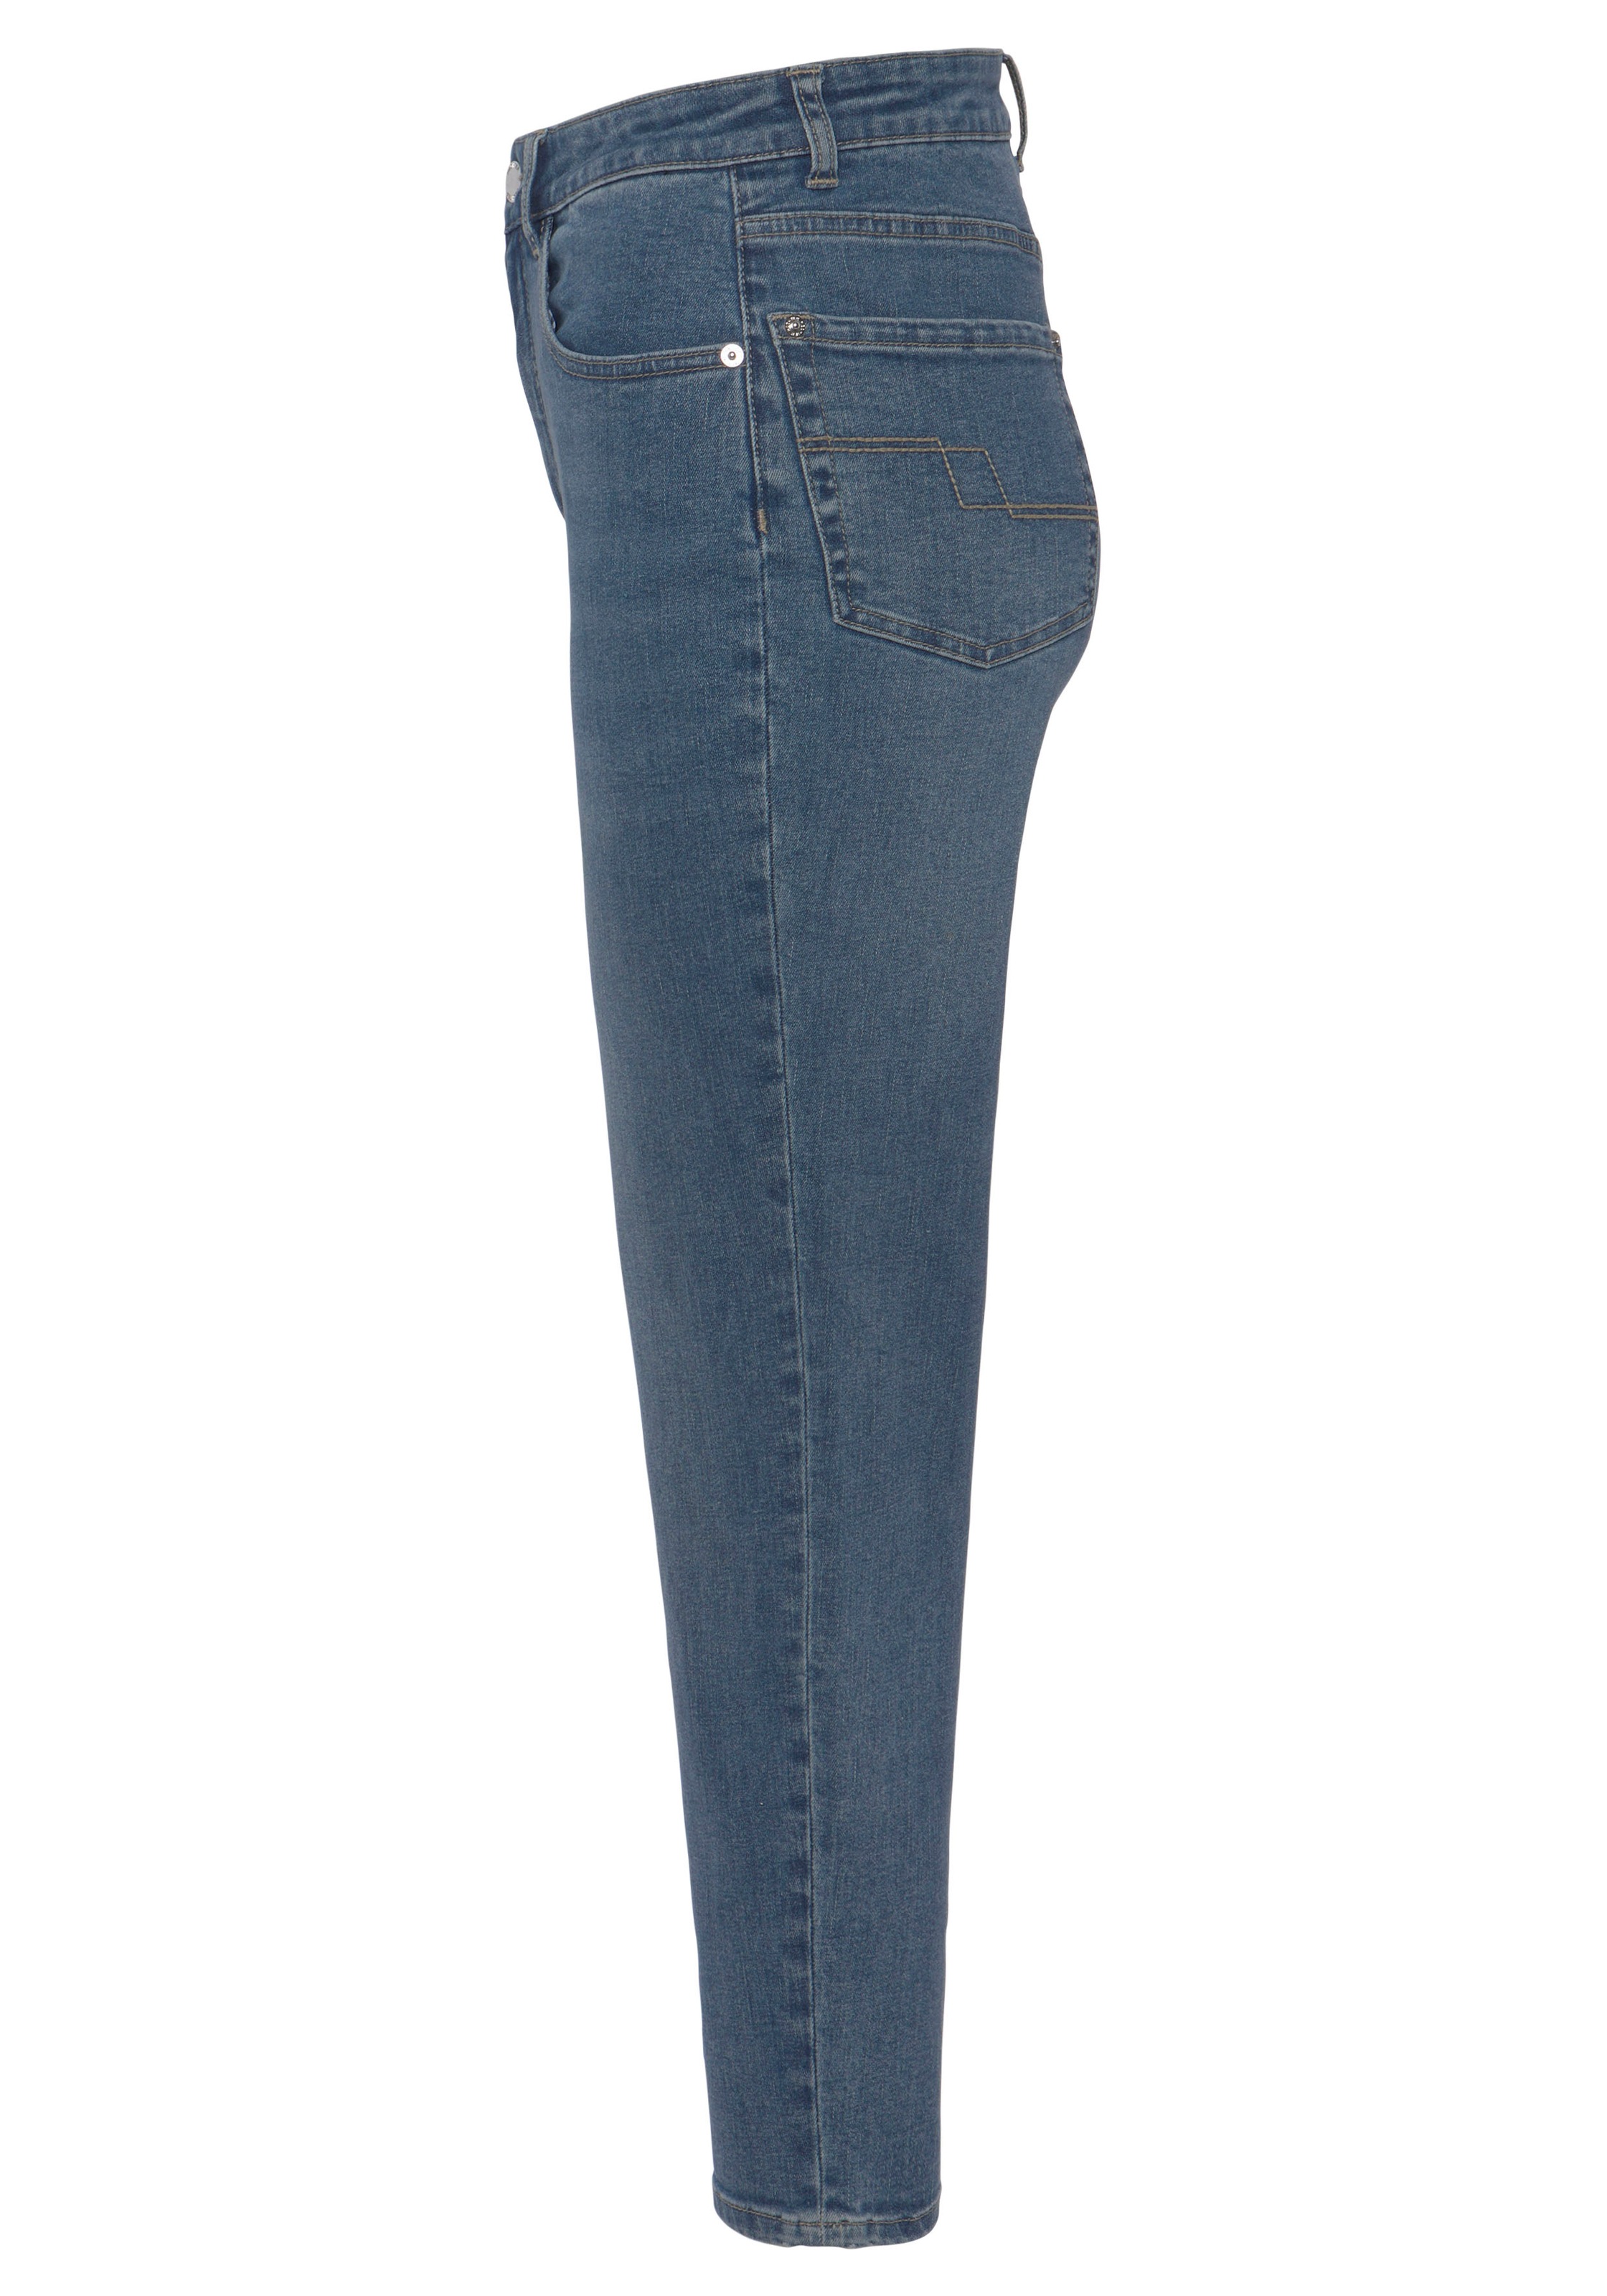 HECHTER PARIS Mom-Jeans, mit dezentem Used-Look